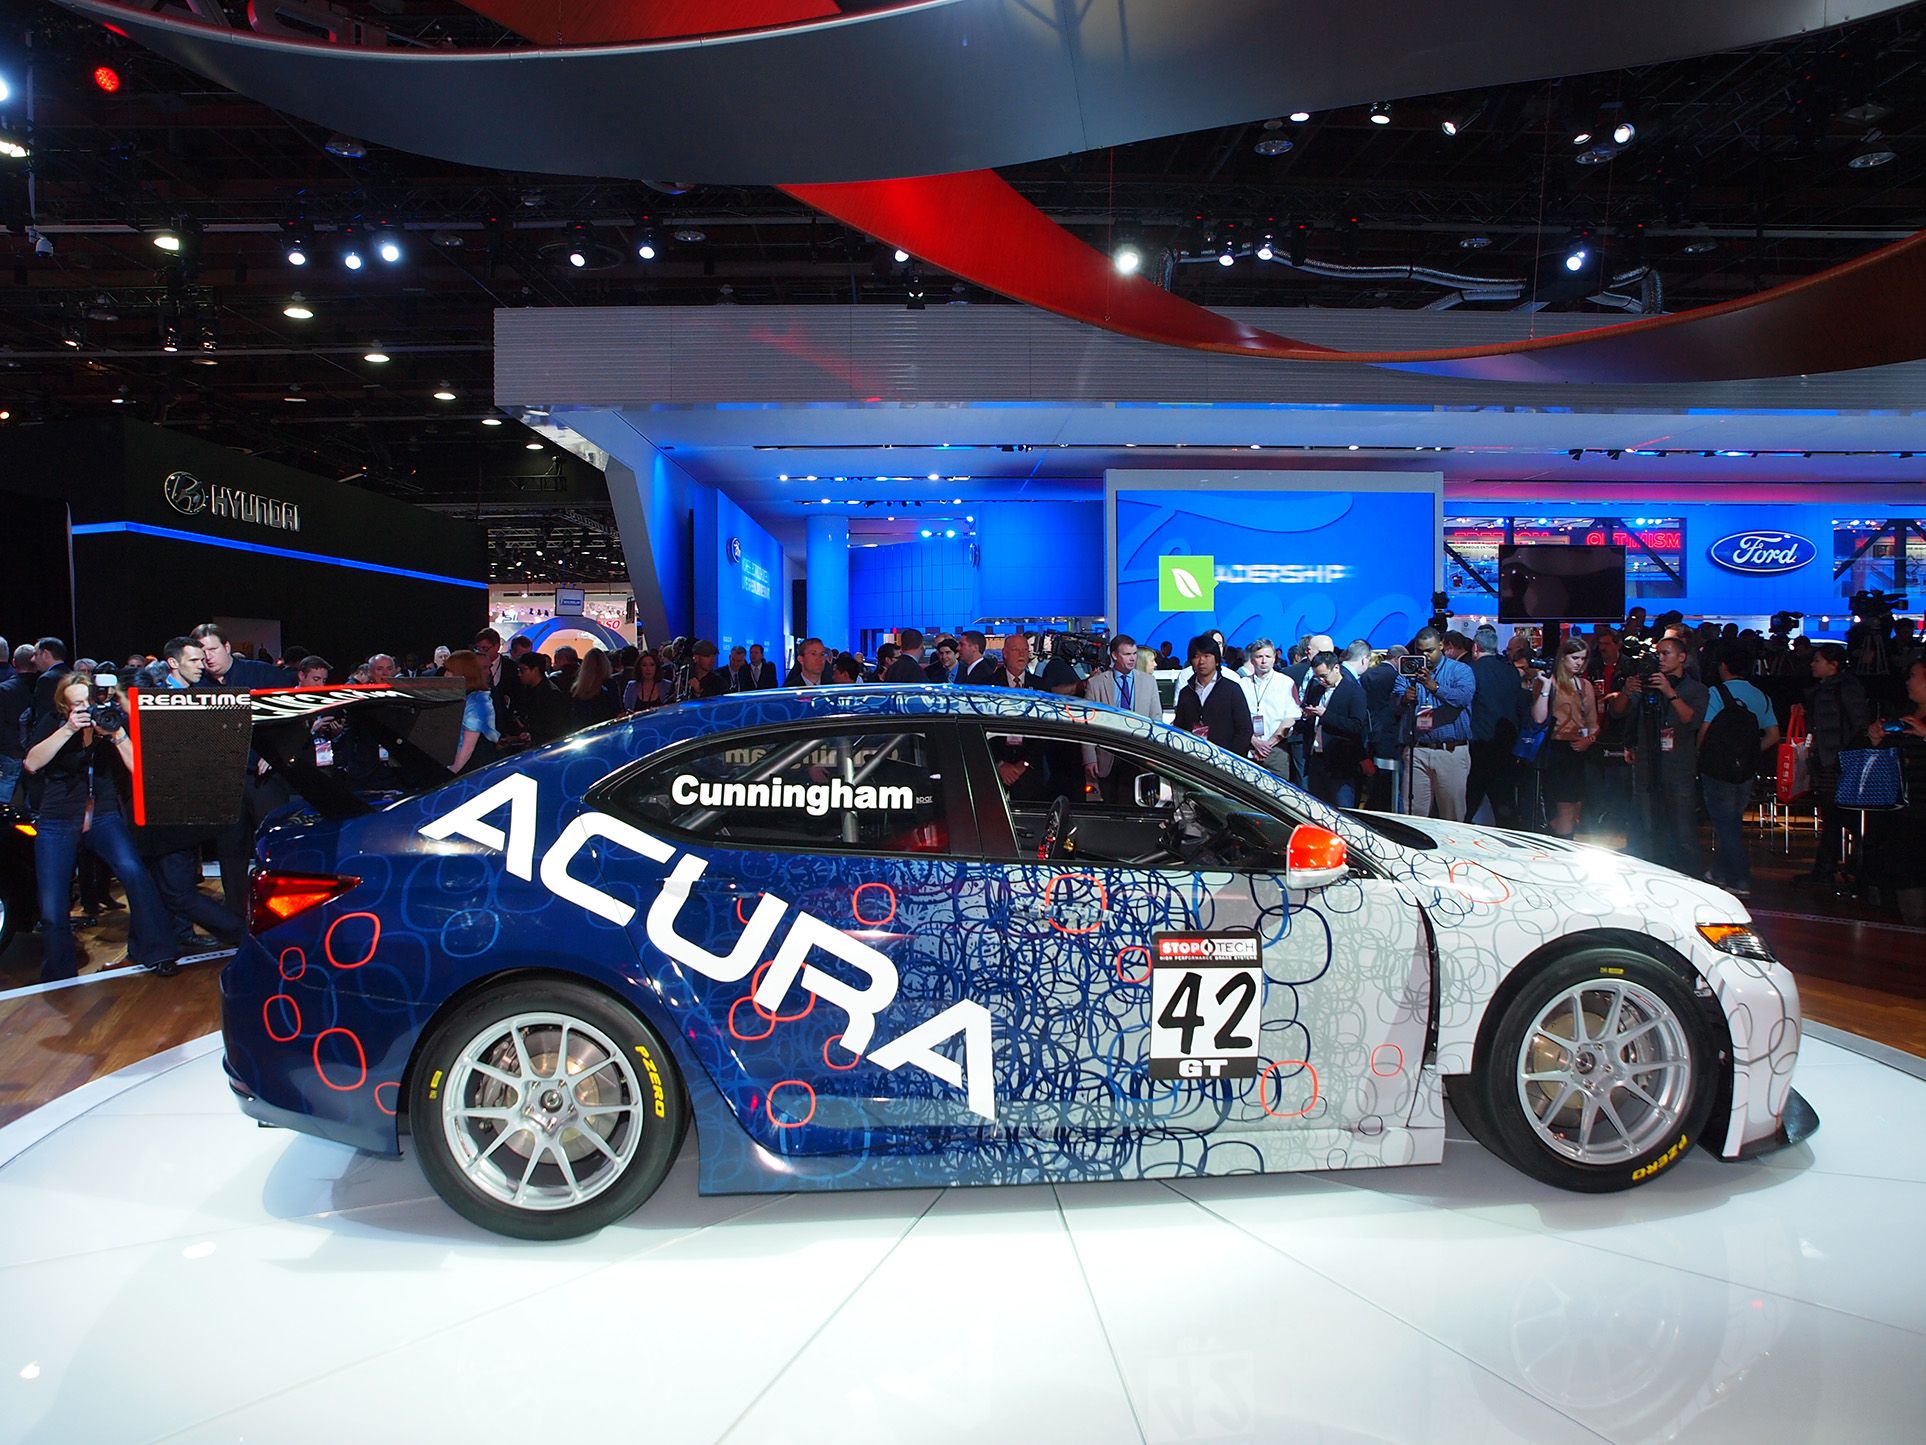 2015 Acura TLX GT Race Car